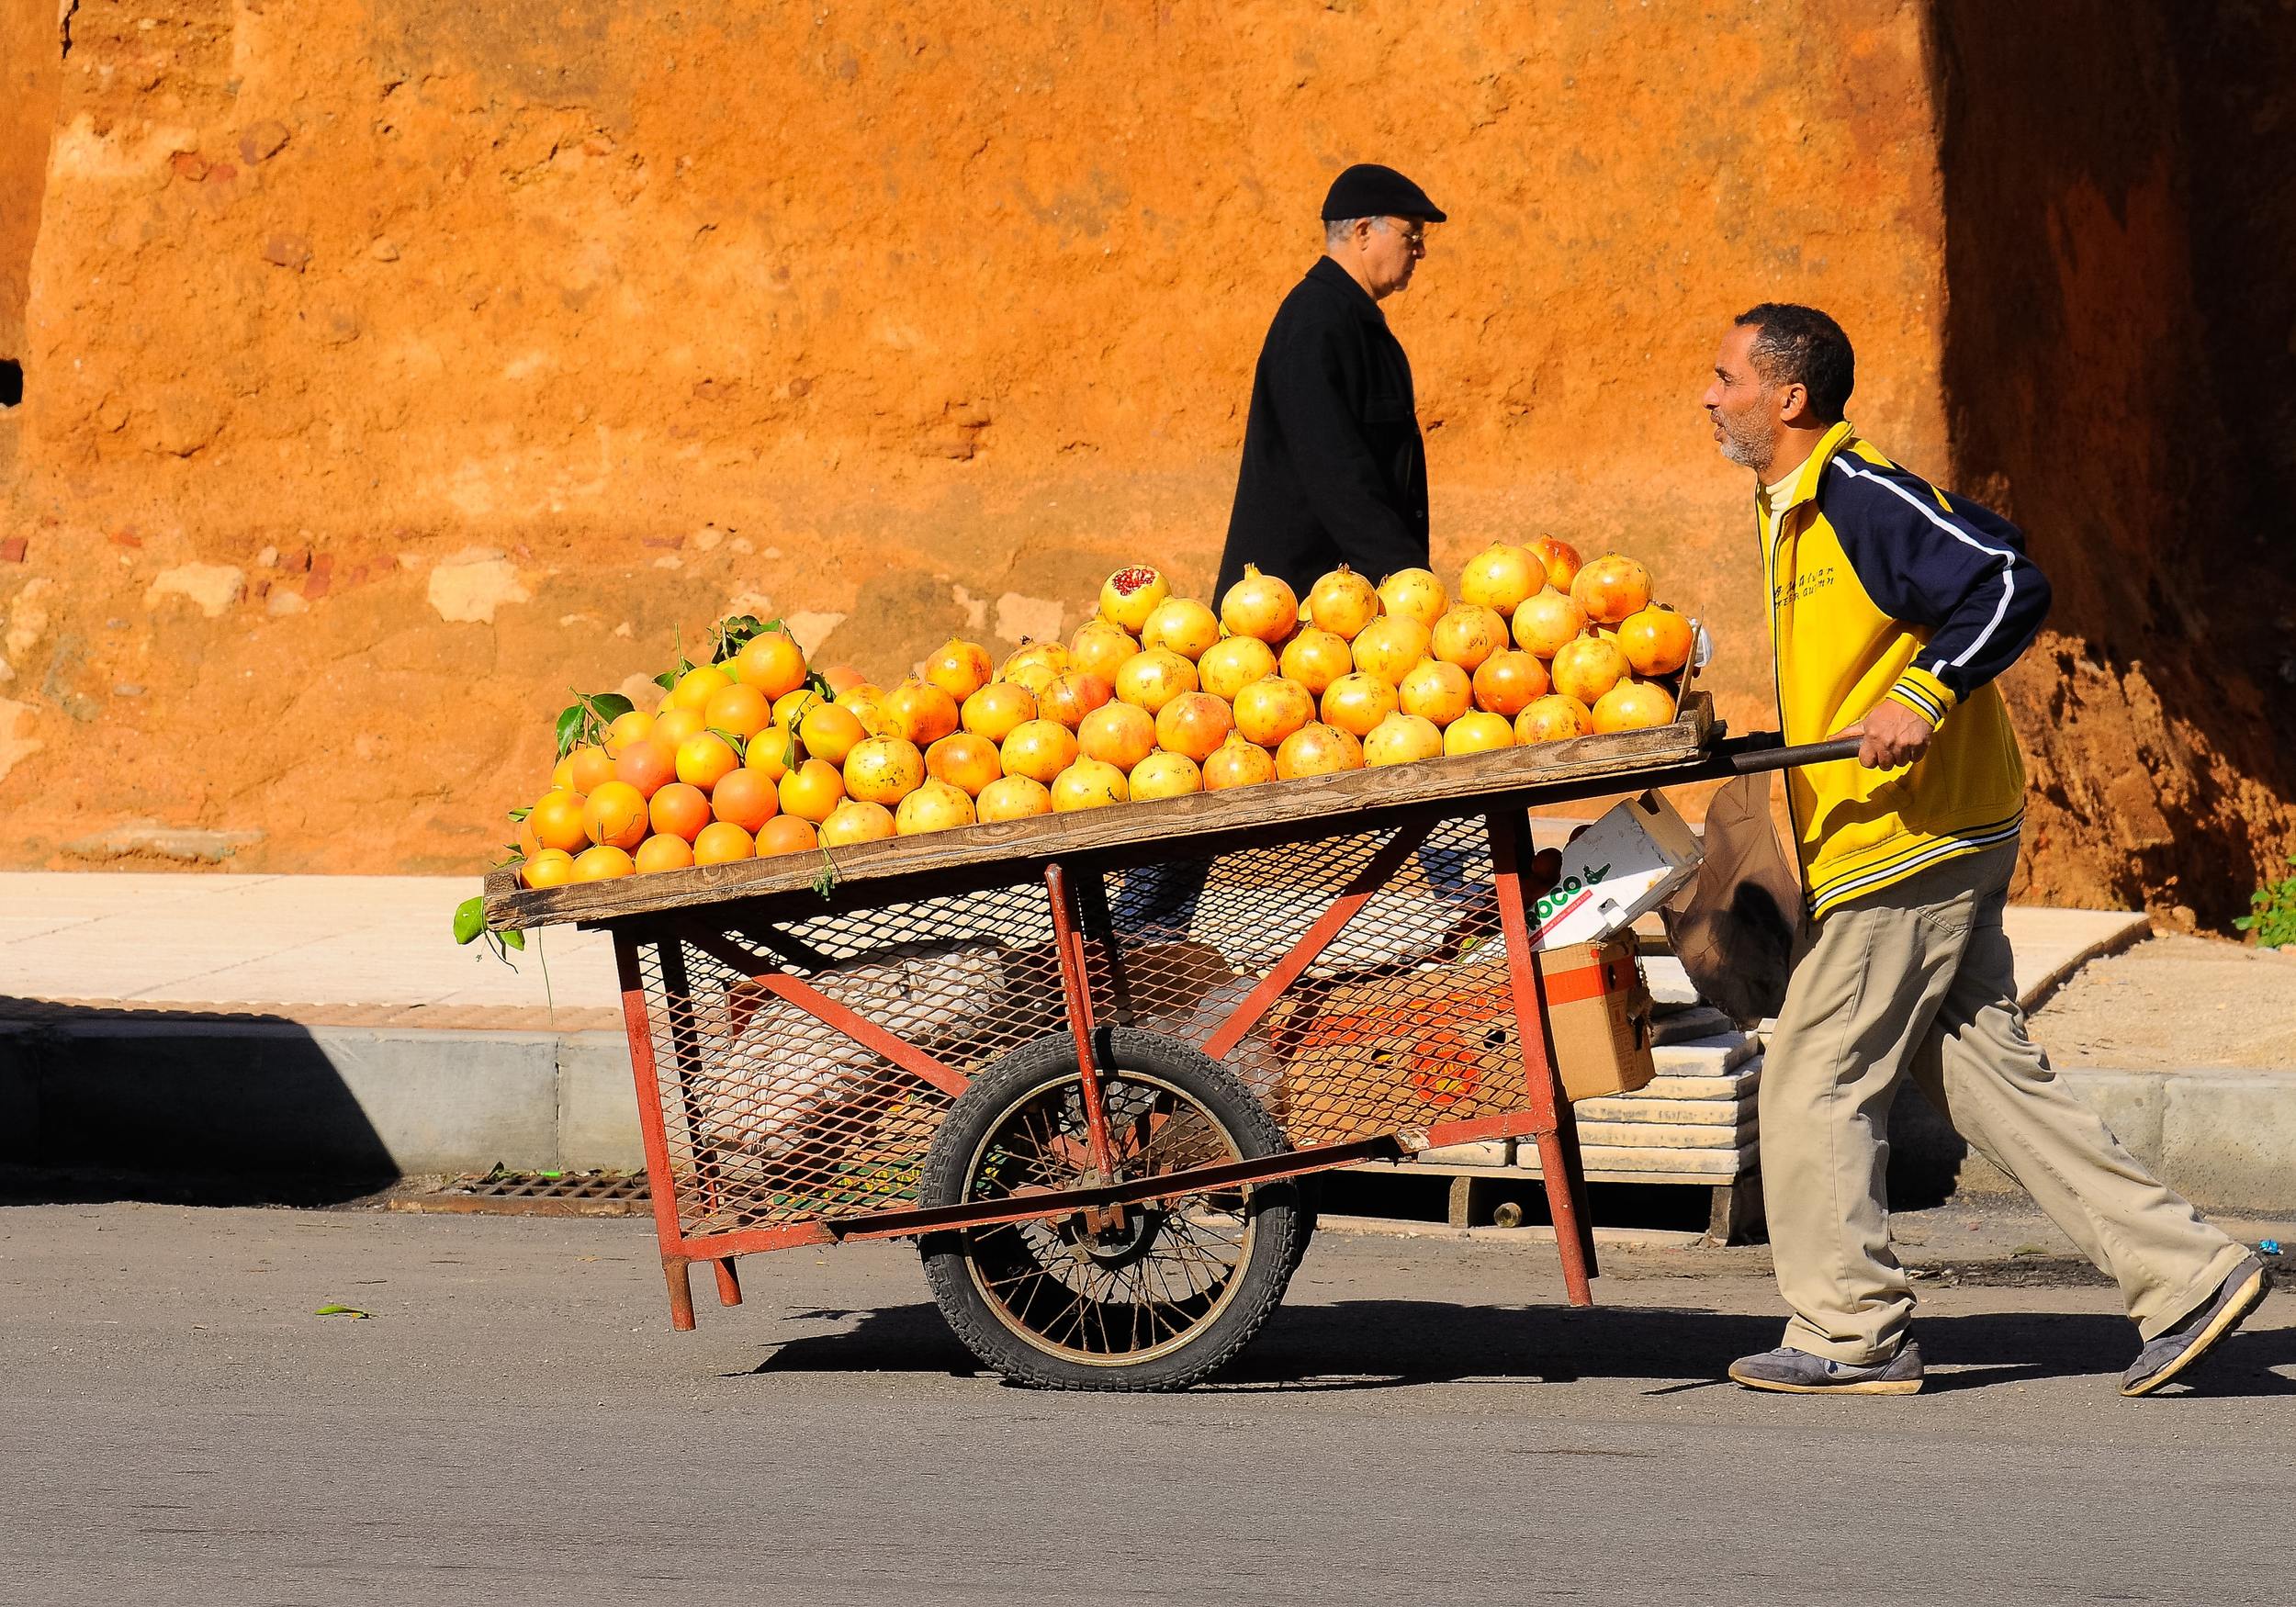 apelsiner i Casablanca foto av Eduardo C. G on Unsplash